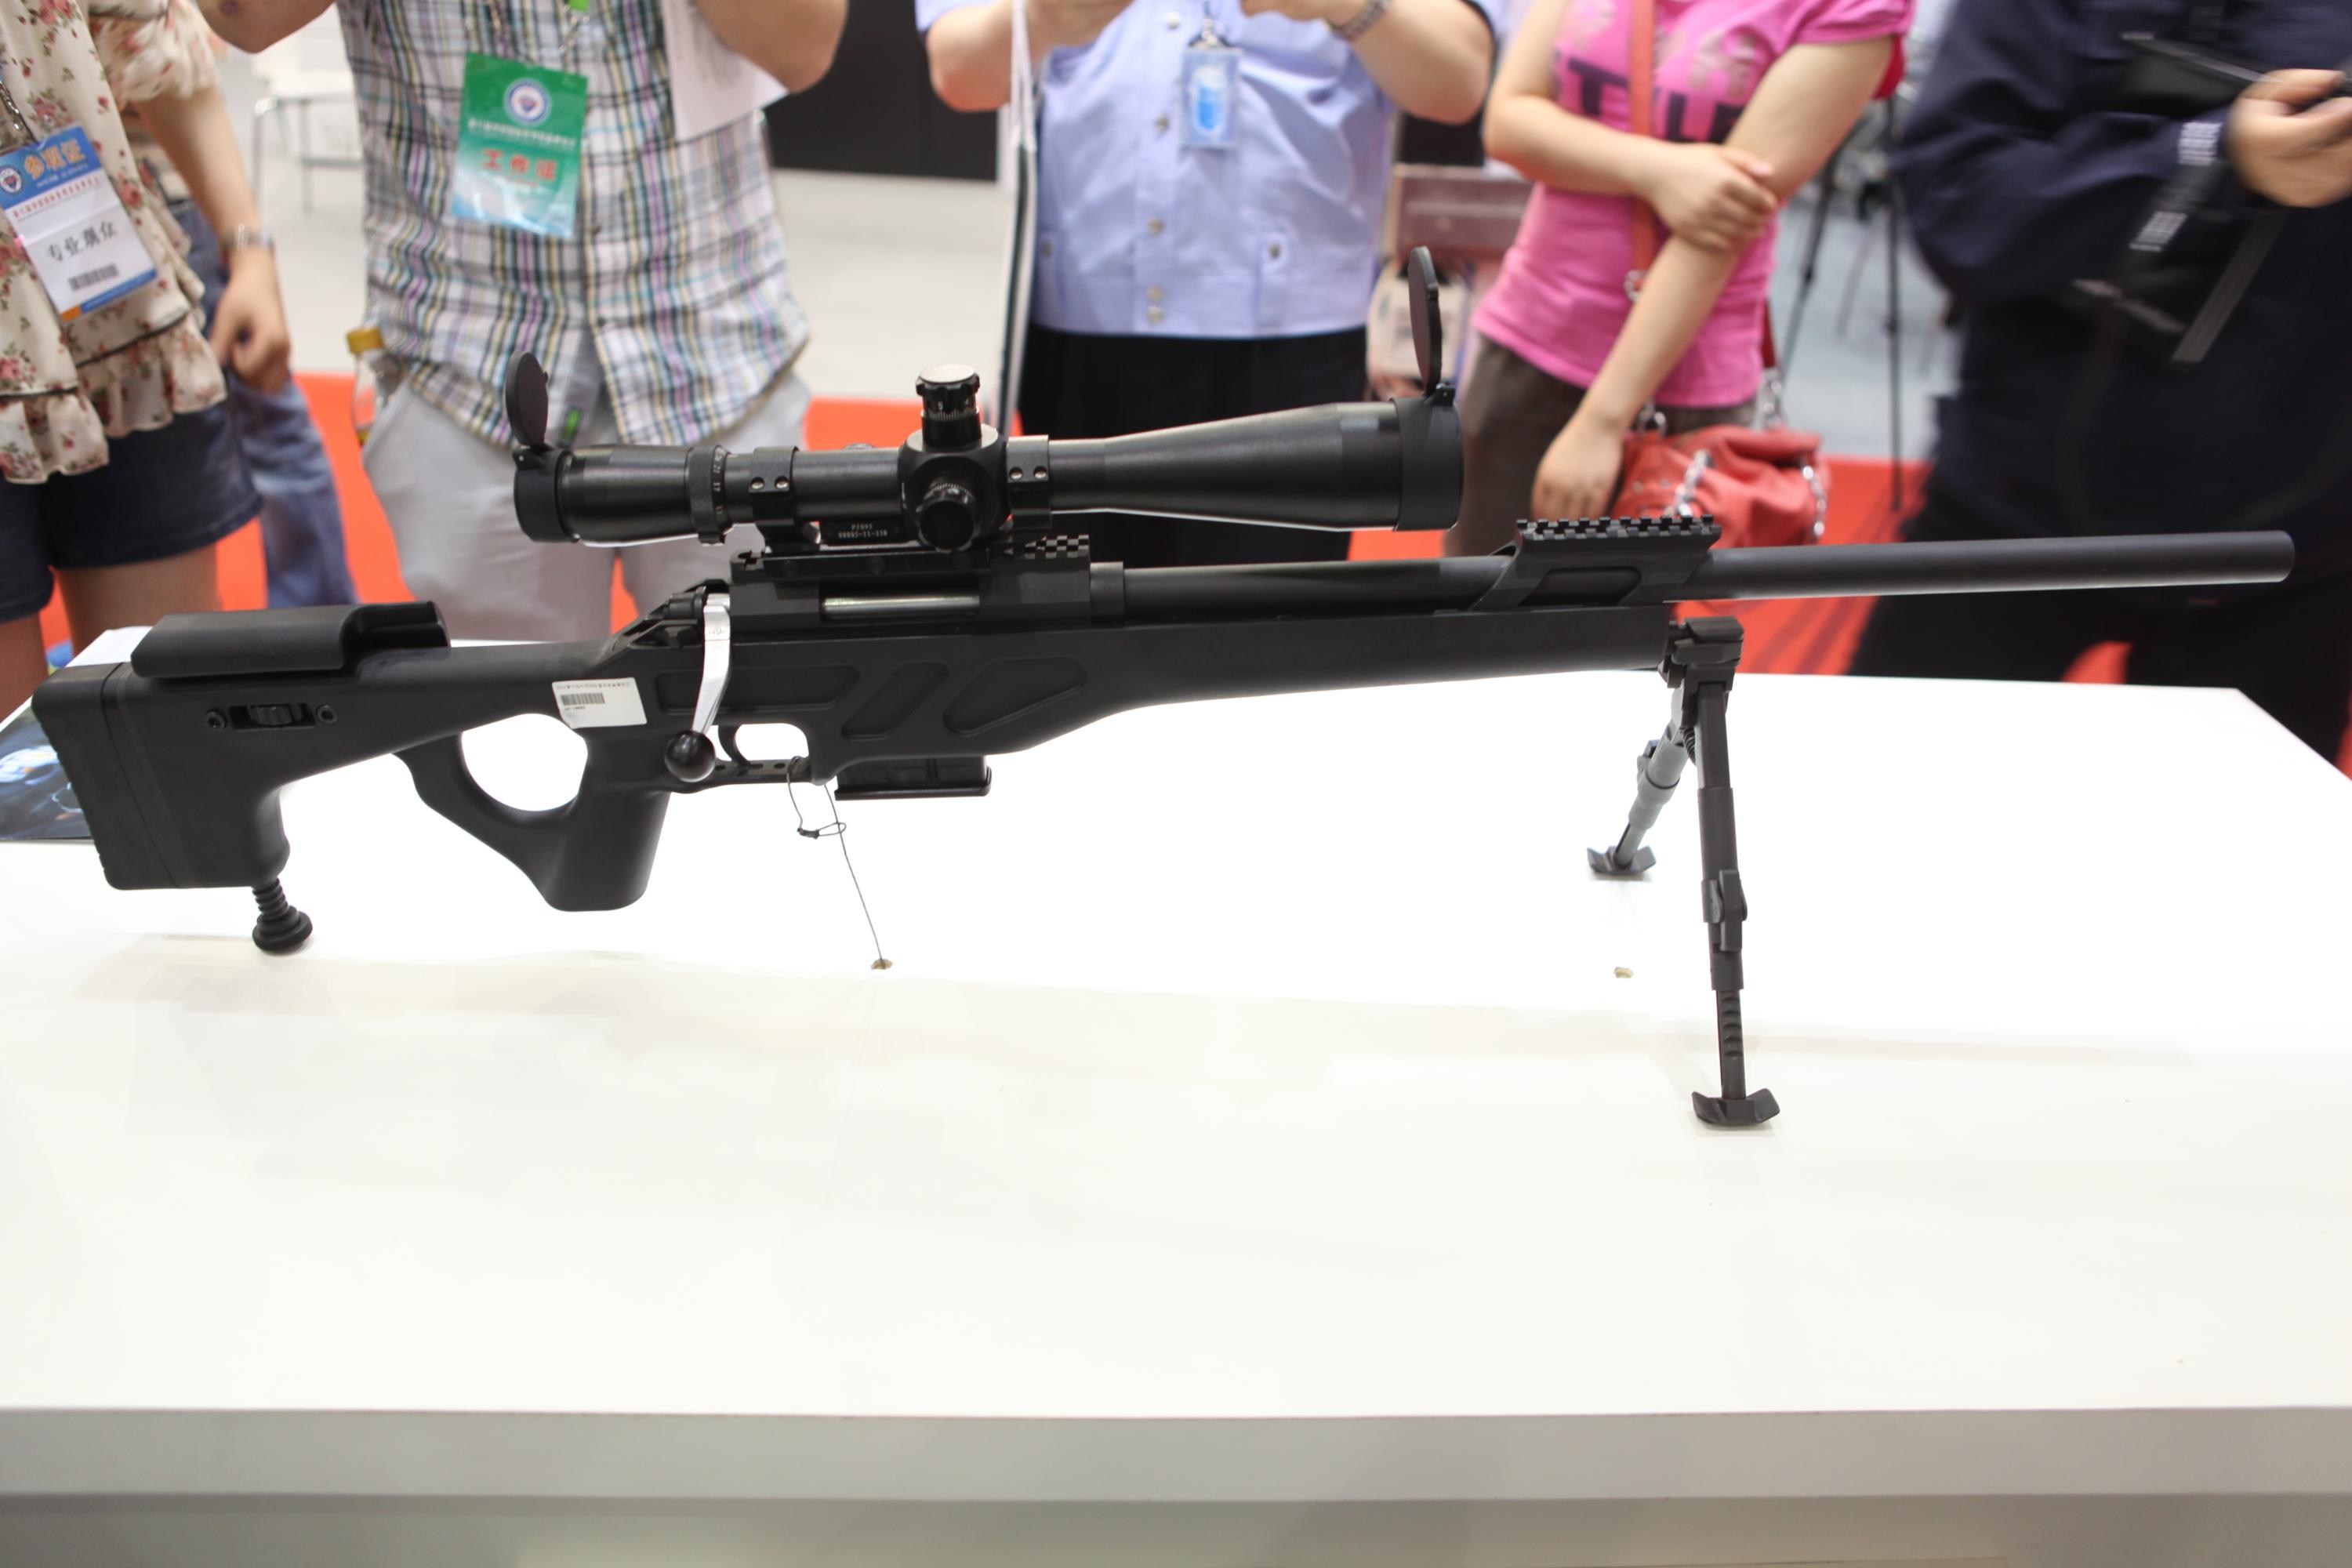 CS/LR-4 7.62mm High Precision Sniper System. 